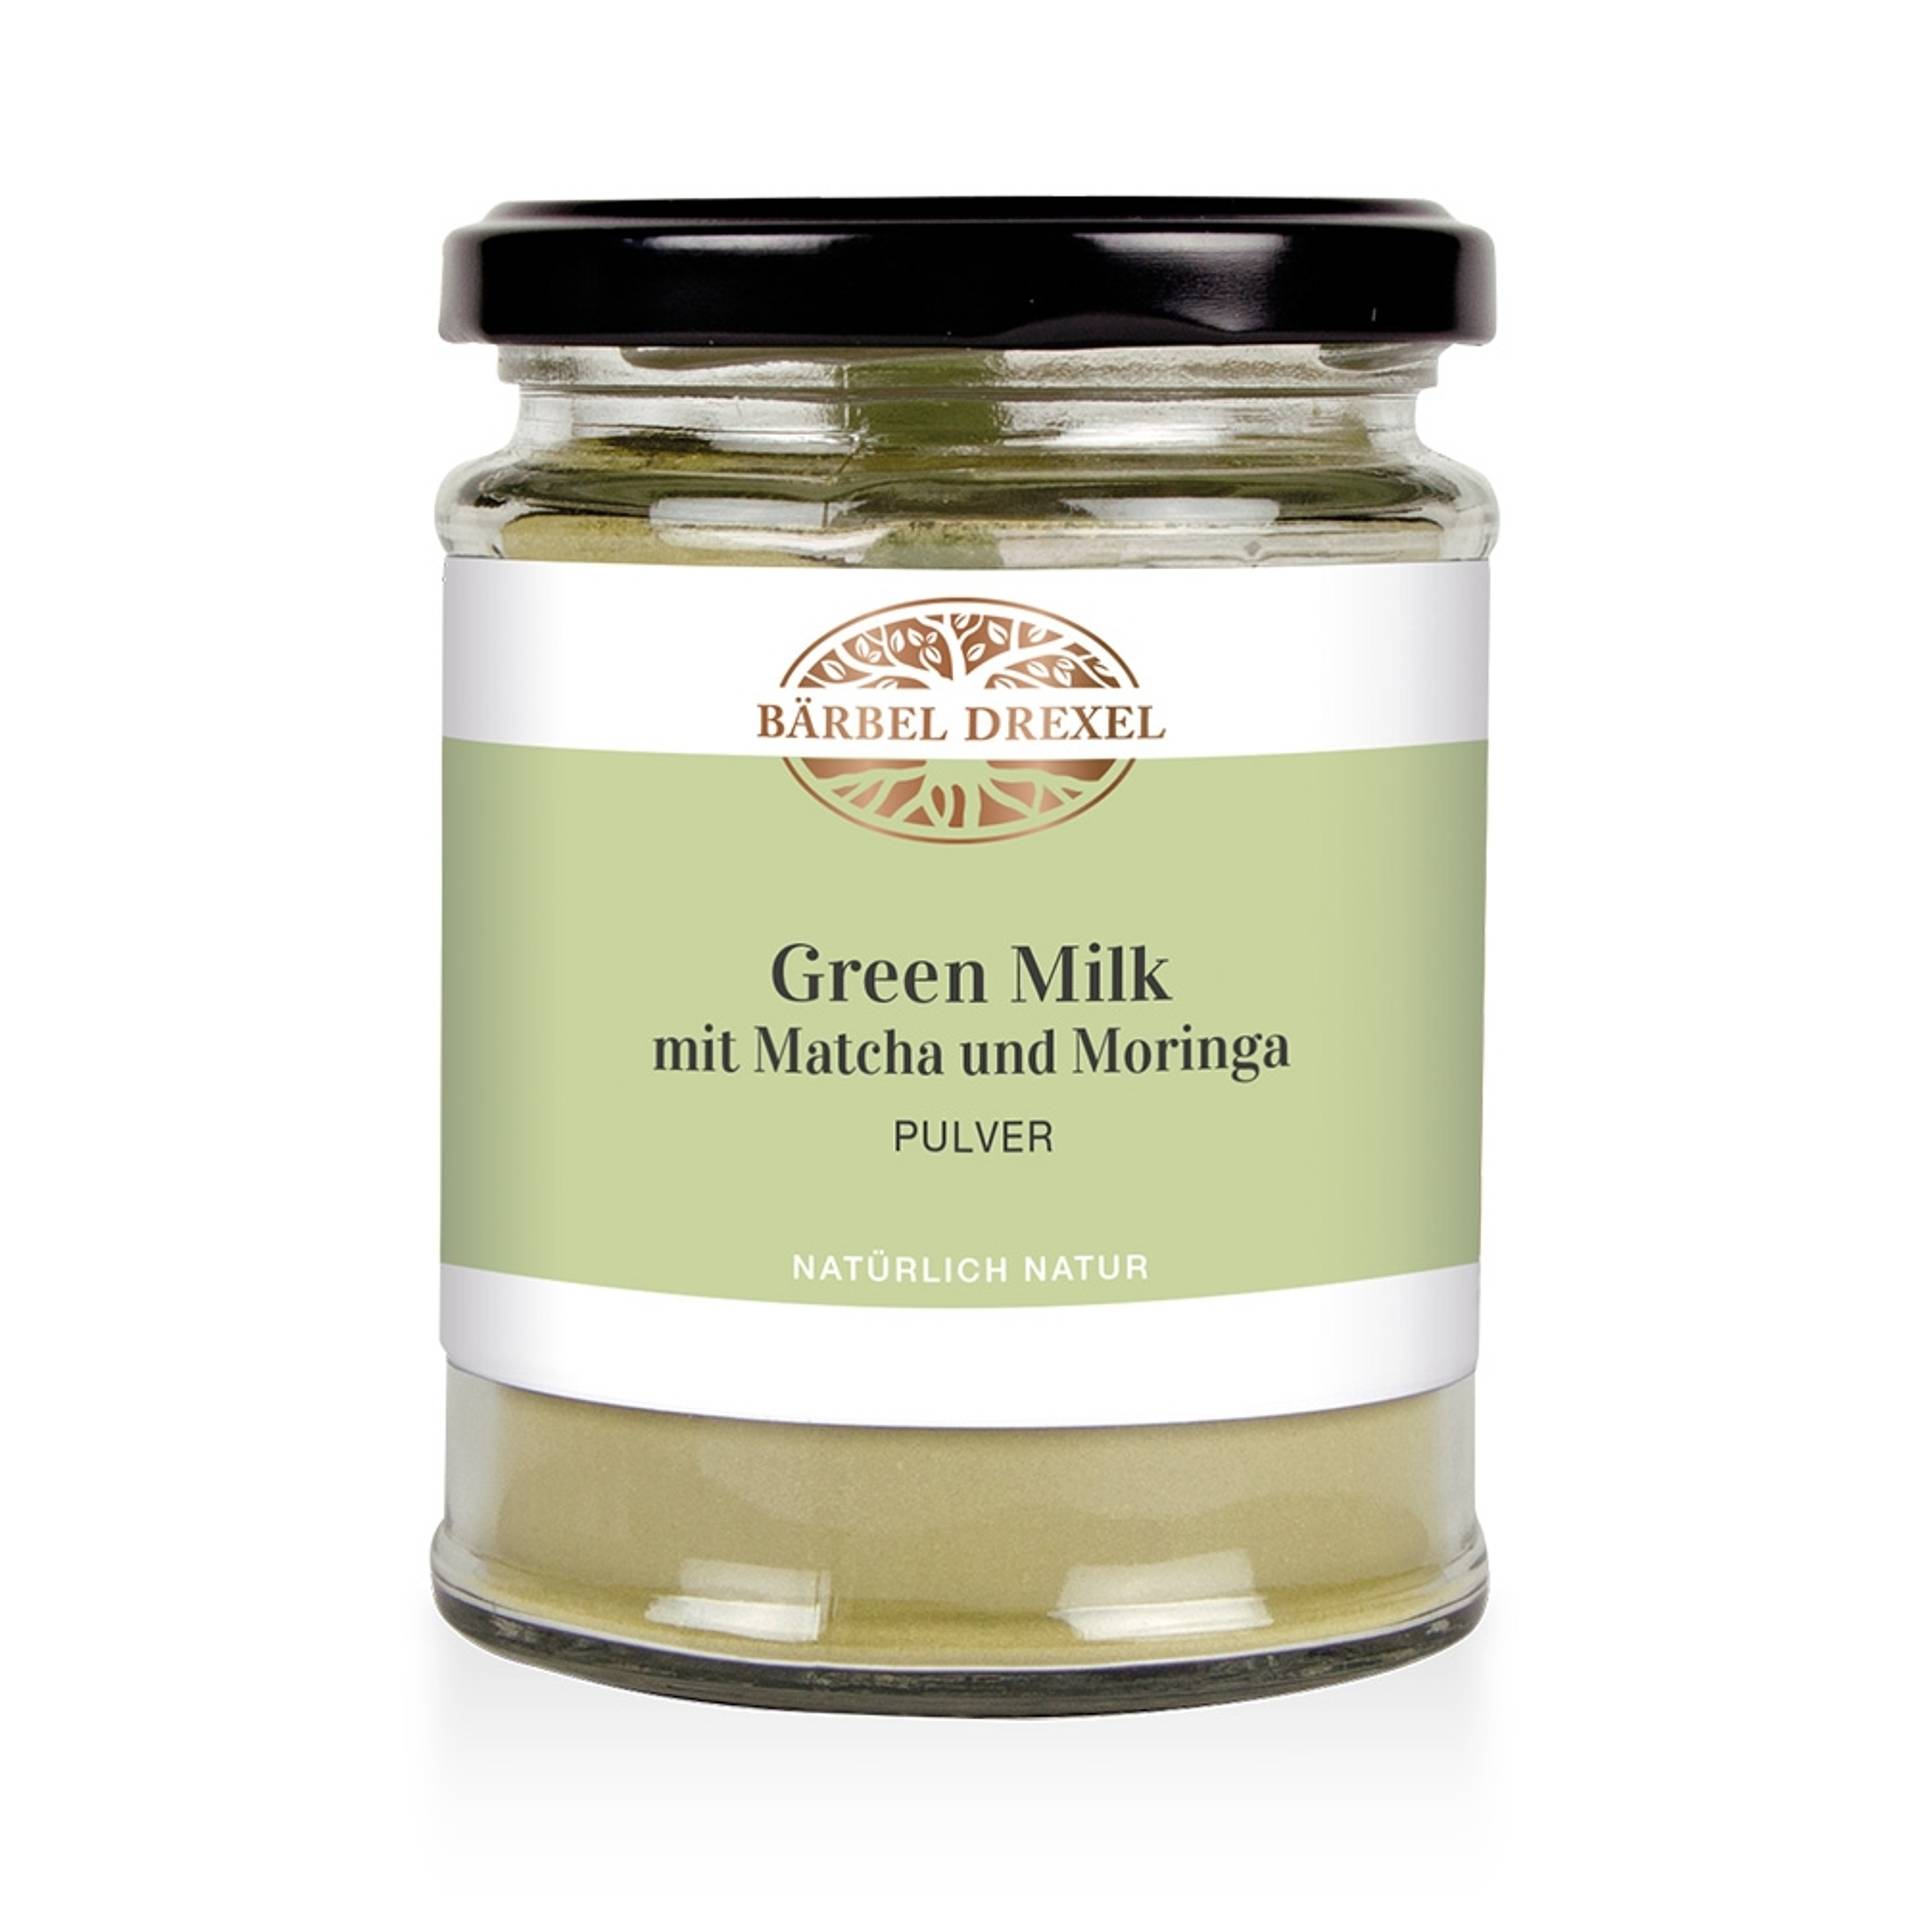 77375-green-milk-mit-matcha-und-moringa-pulver-120g_ohne-deko_1_1.jpg